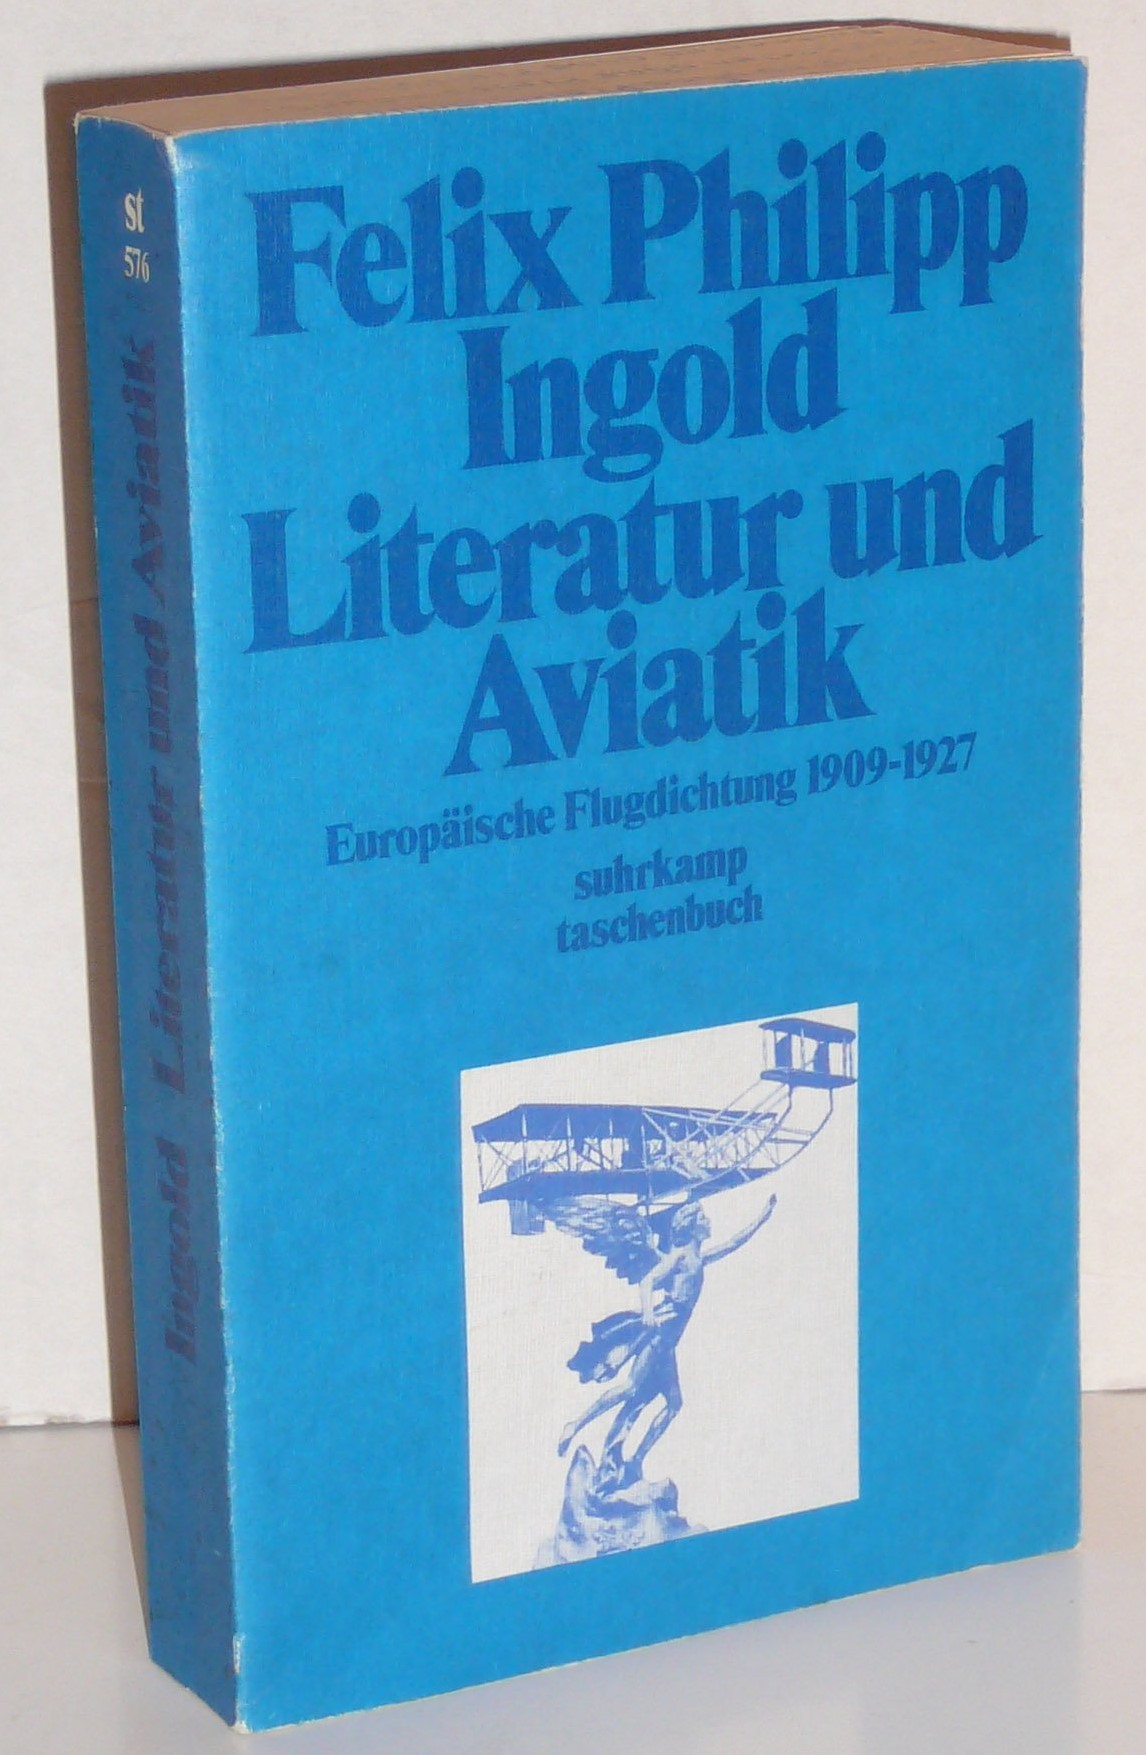 Zu sehen ist die Titelseite des Buches „Literatur und Aviatik. Europäische Flugdichtung 1909 bis 1927“ von Felix Philipp Ingold aus dem Jahr 1980.